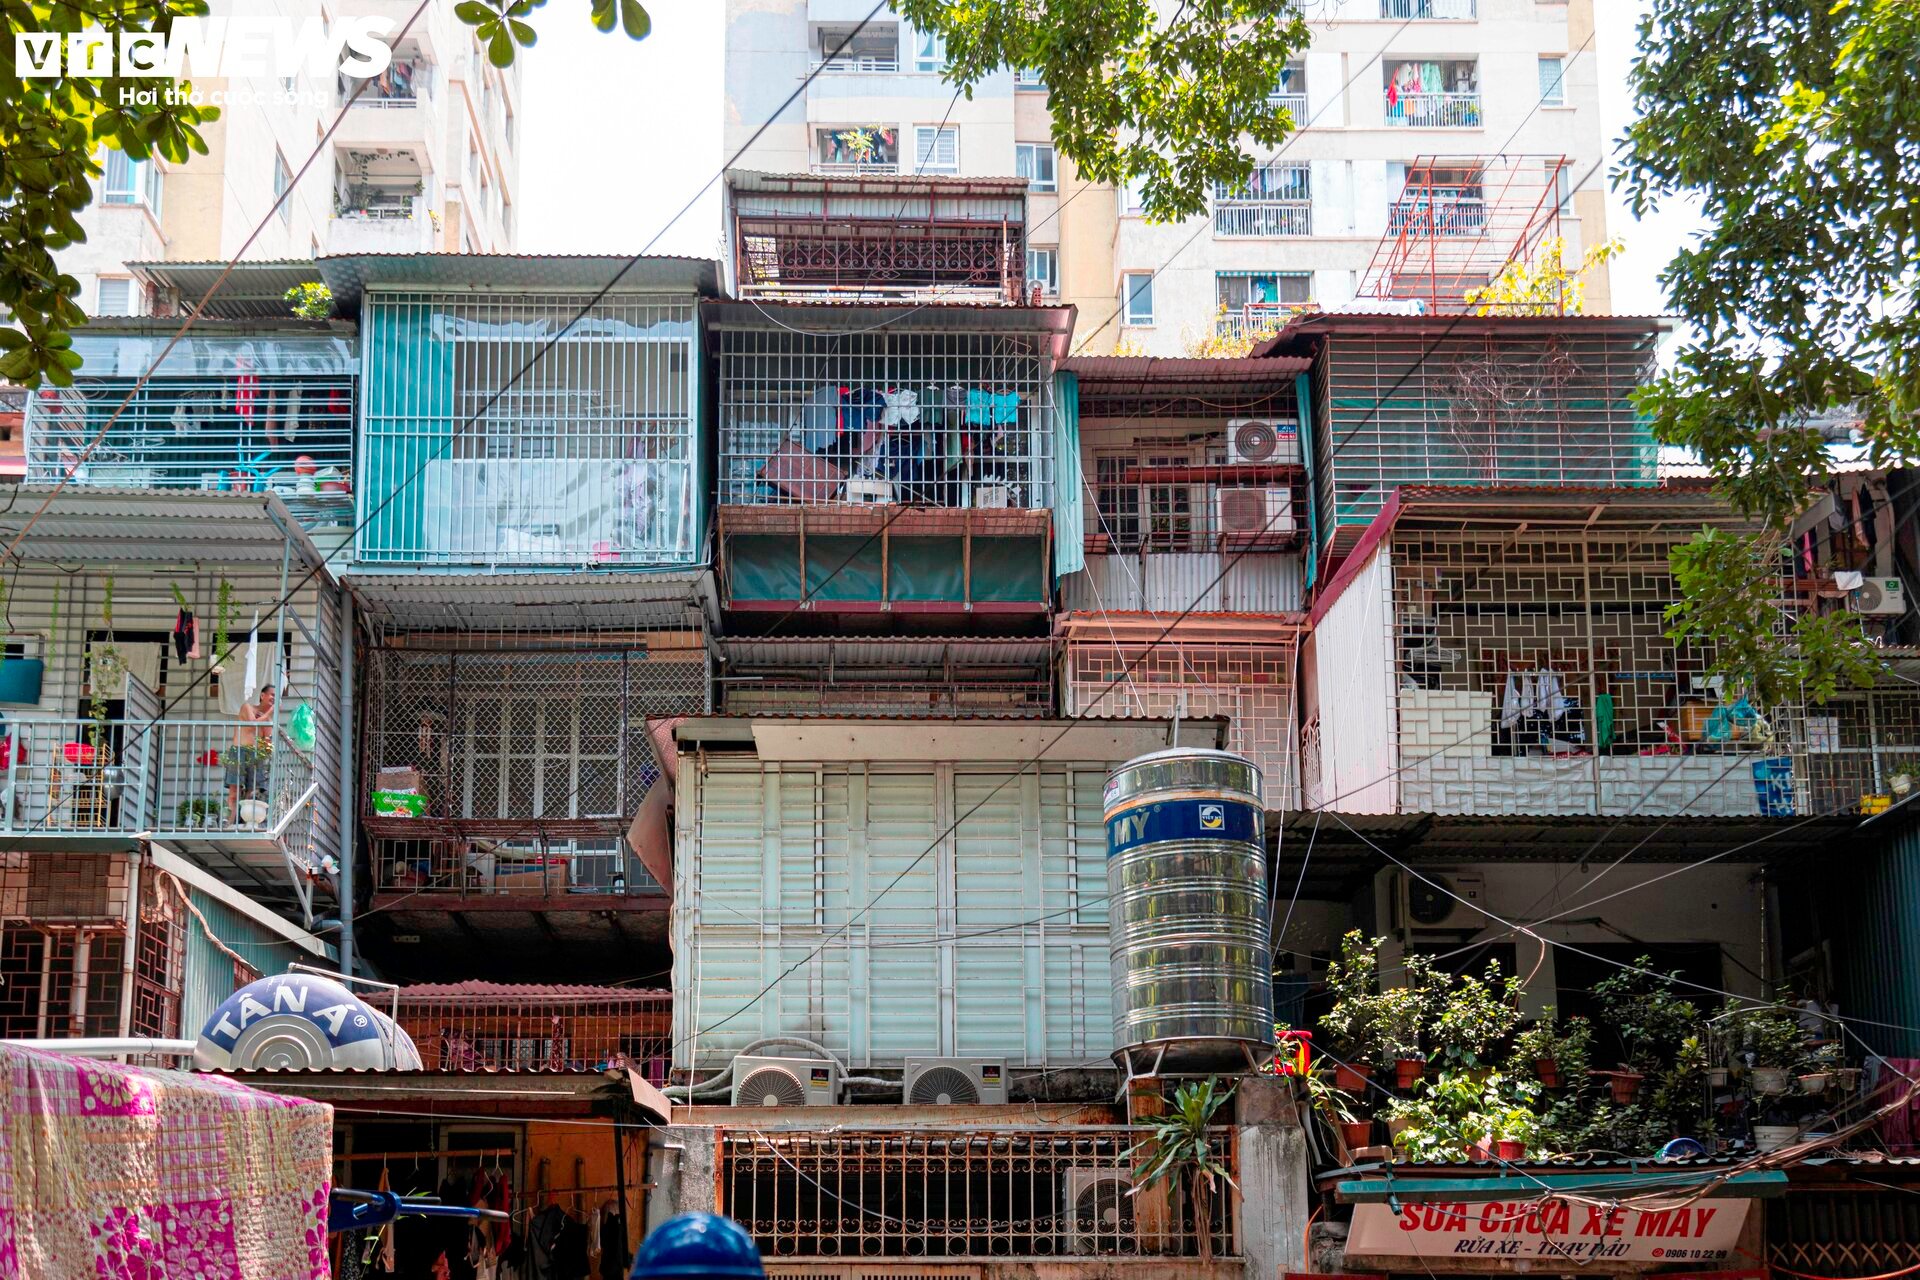 Ma trận chuồng cọp san sát ở Hà Nội: Những khung sắt nhốt người trong hỏa hoạn - 6